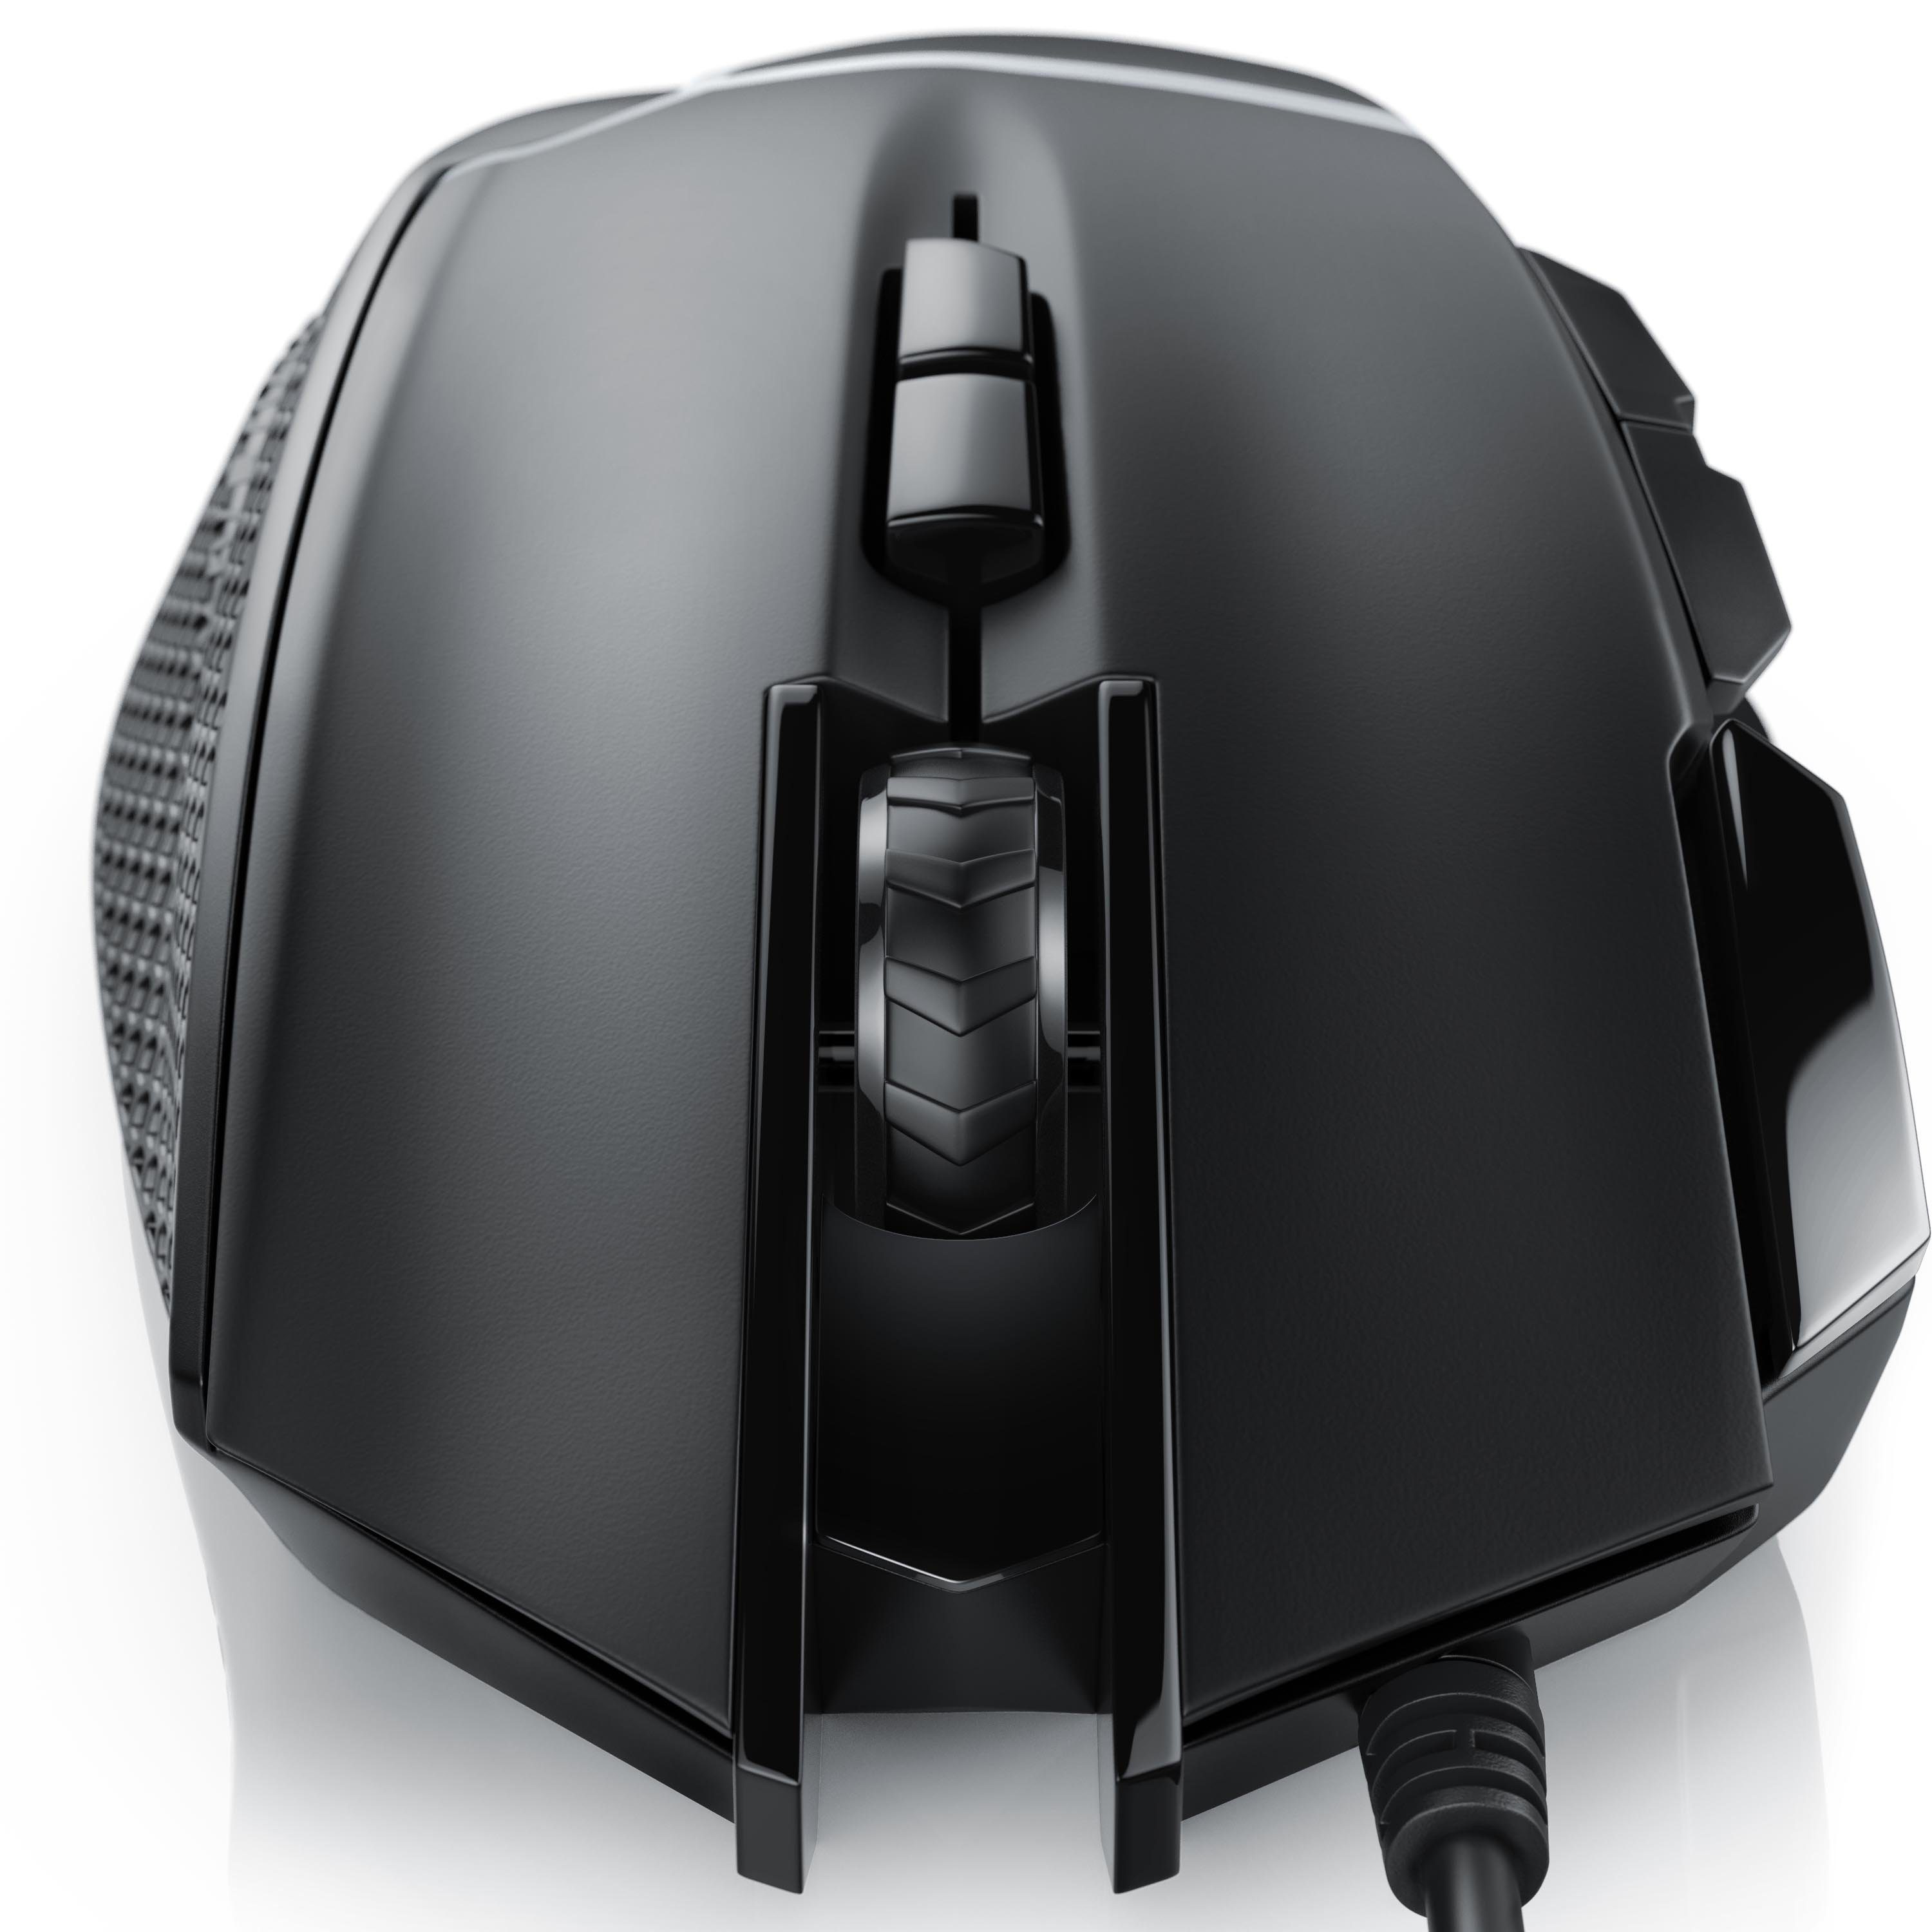 CSL Gewichten) 500 Abtastrate Mouse (kabelgebunden, dpi, dpi, inkl. Gaming-Maus wählbar, 3200 ergonomisch,